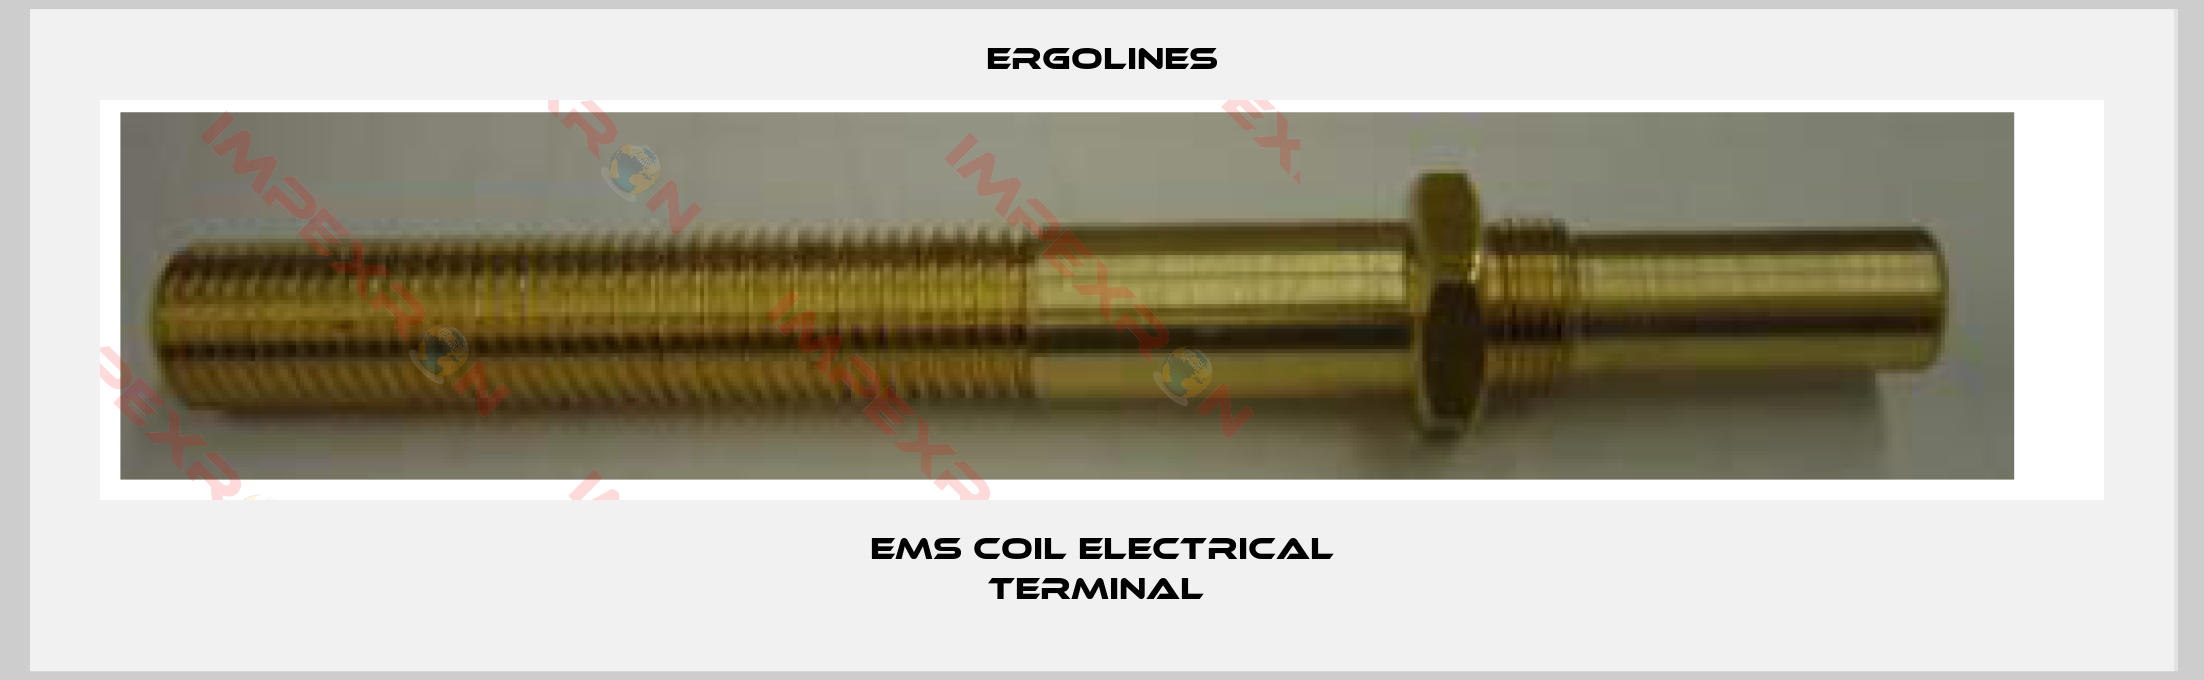 Ergolines-EMS coil electrical terminal 